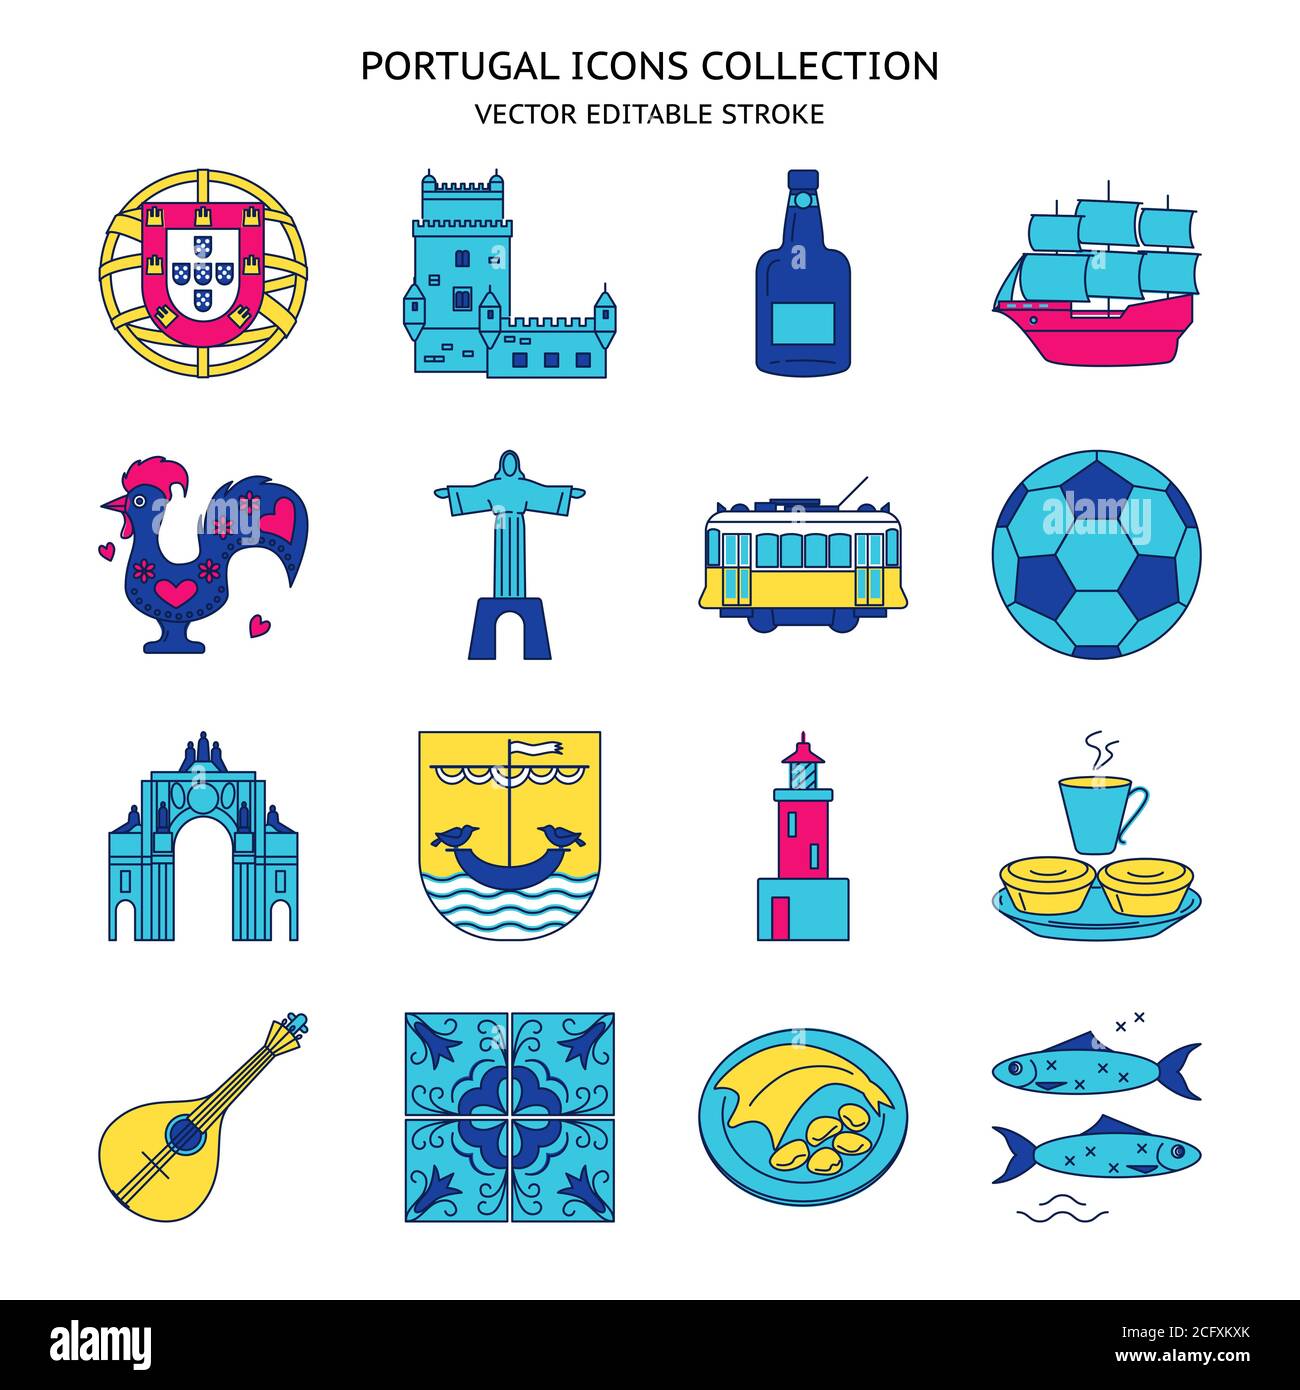 Les icônes du Portugal se présentent sous forme de lignes colorées. Symboles traditionnels, dont le fado de guitare, l'emblème portugais, le Christo rei, le coq, le vin de porto. Edition de vecteur Illustration de Vecteur